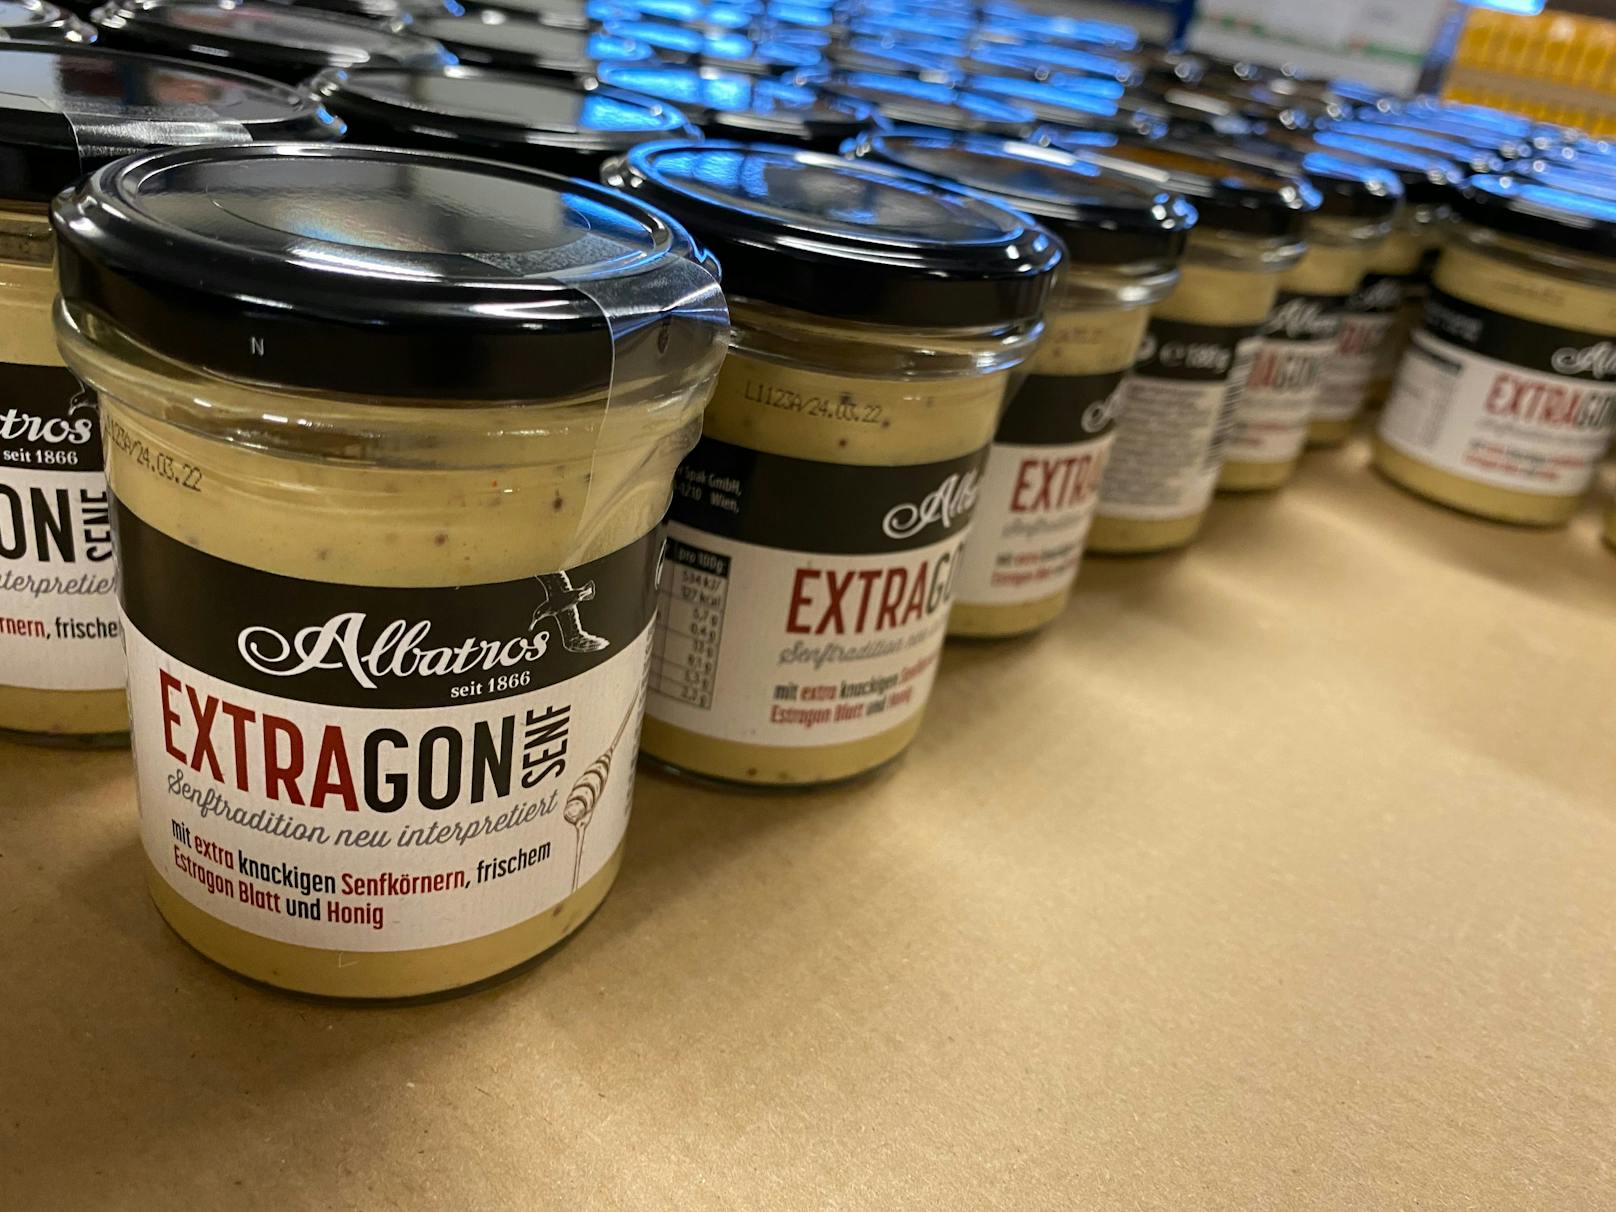 <em>EXTRAgon Senf: Das frisch eingelegte Estragon-Blatt, knackige Senfkörner und Honig sorgen für einen umwerfenden Biss.</em>